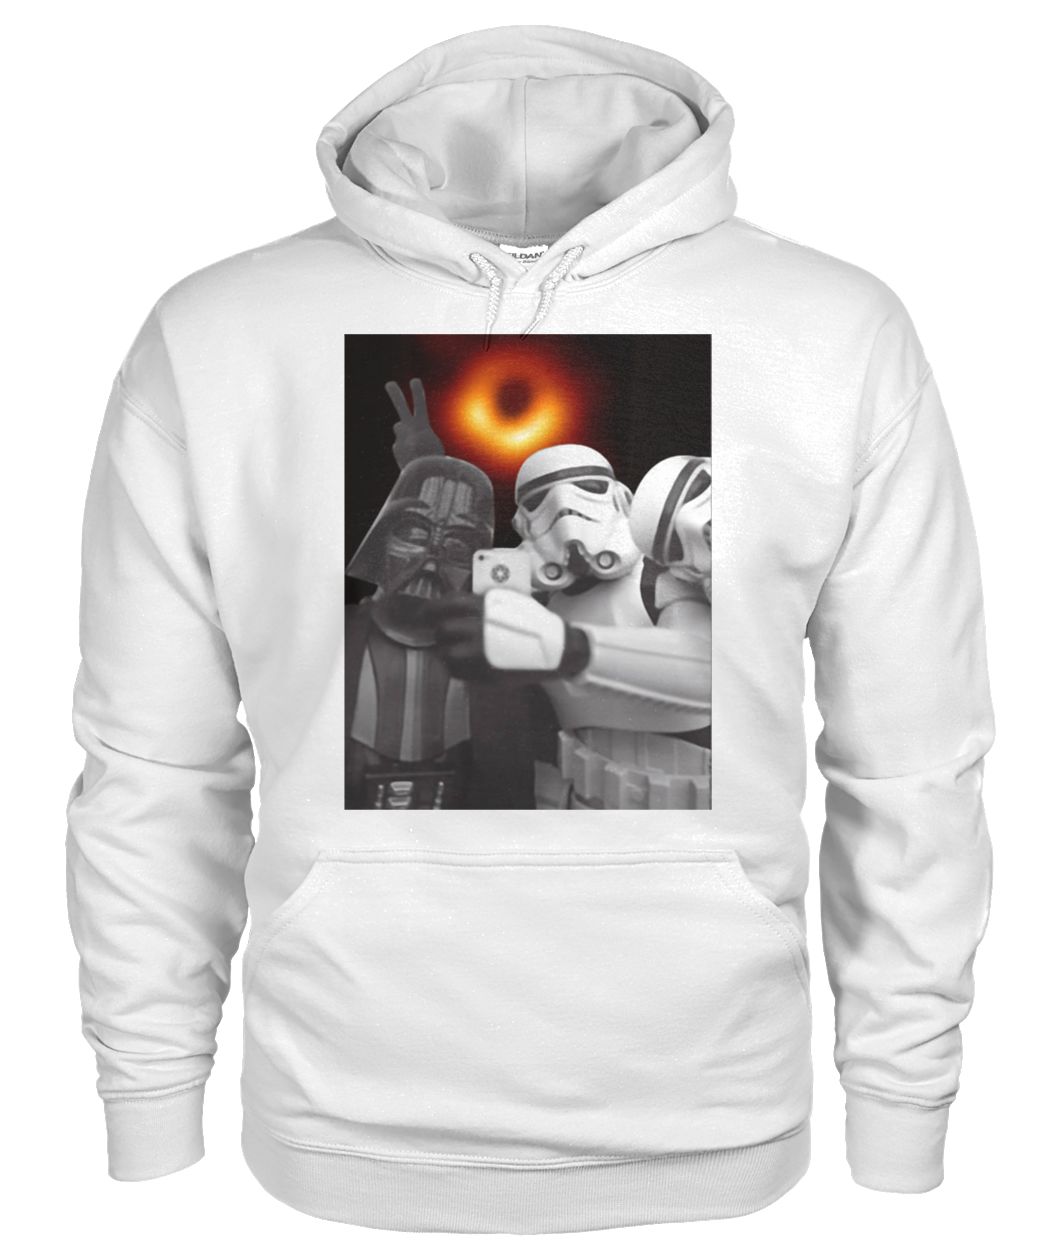 Darth vader and stormtroopers selfie with black hole 2019 gildan hoodie